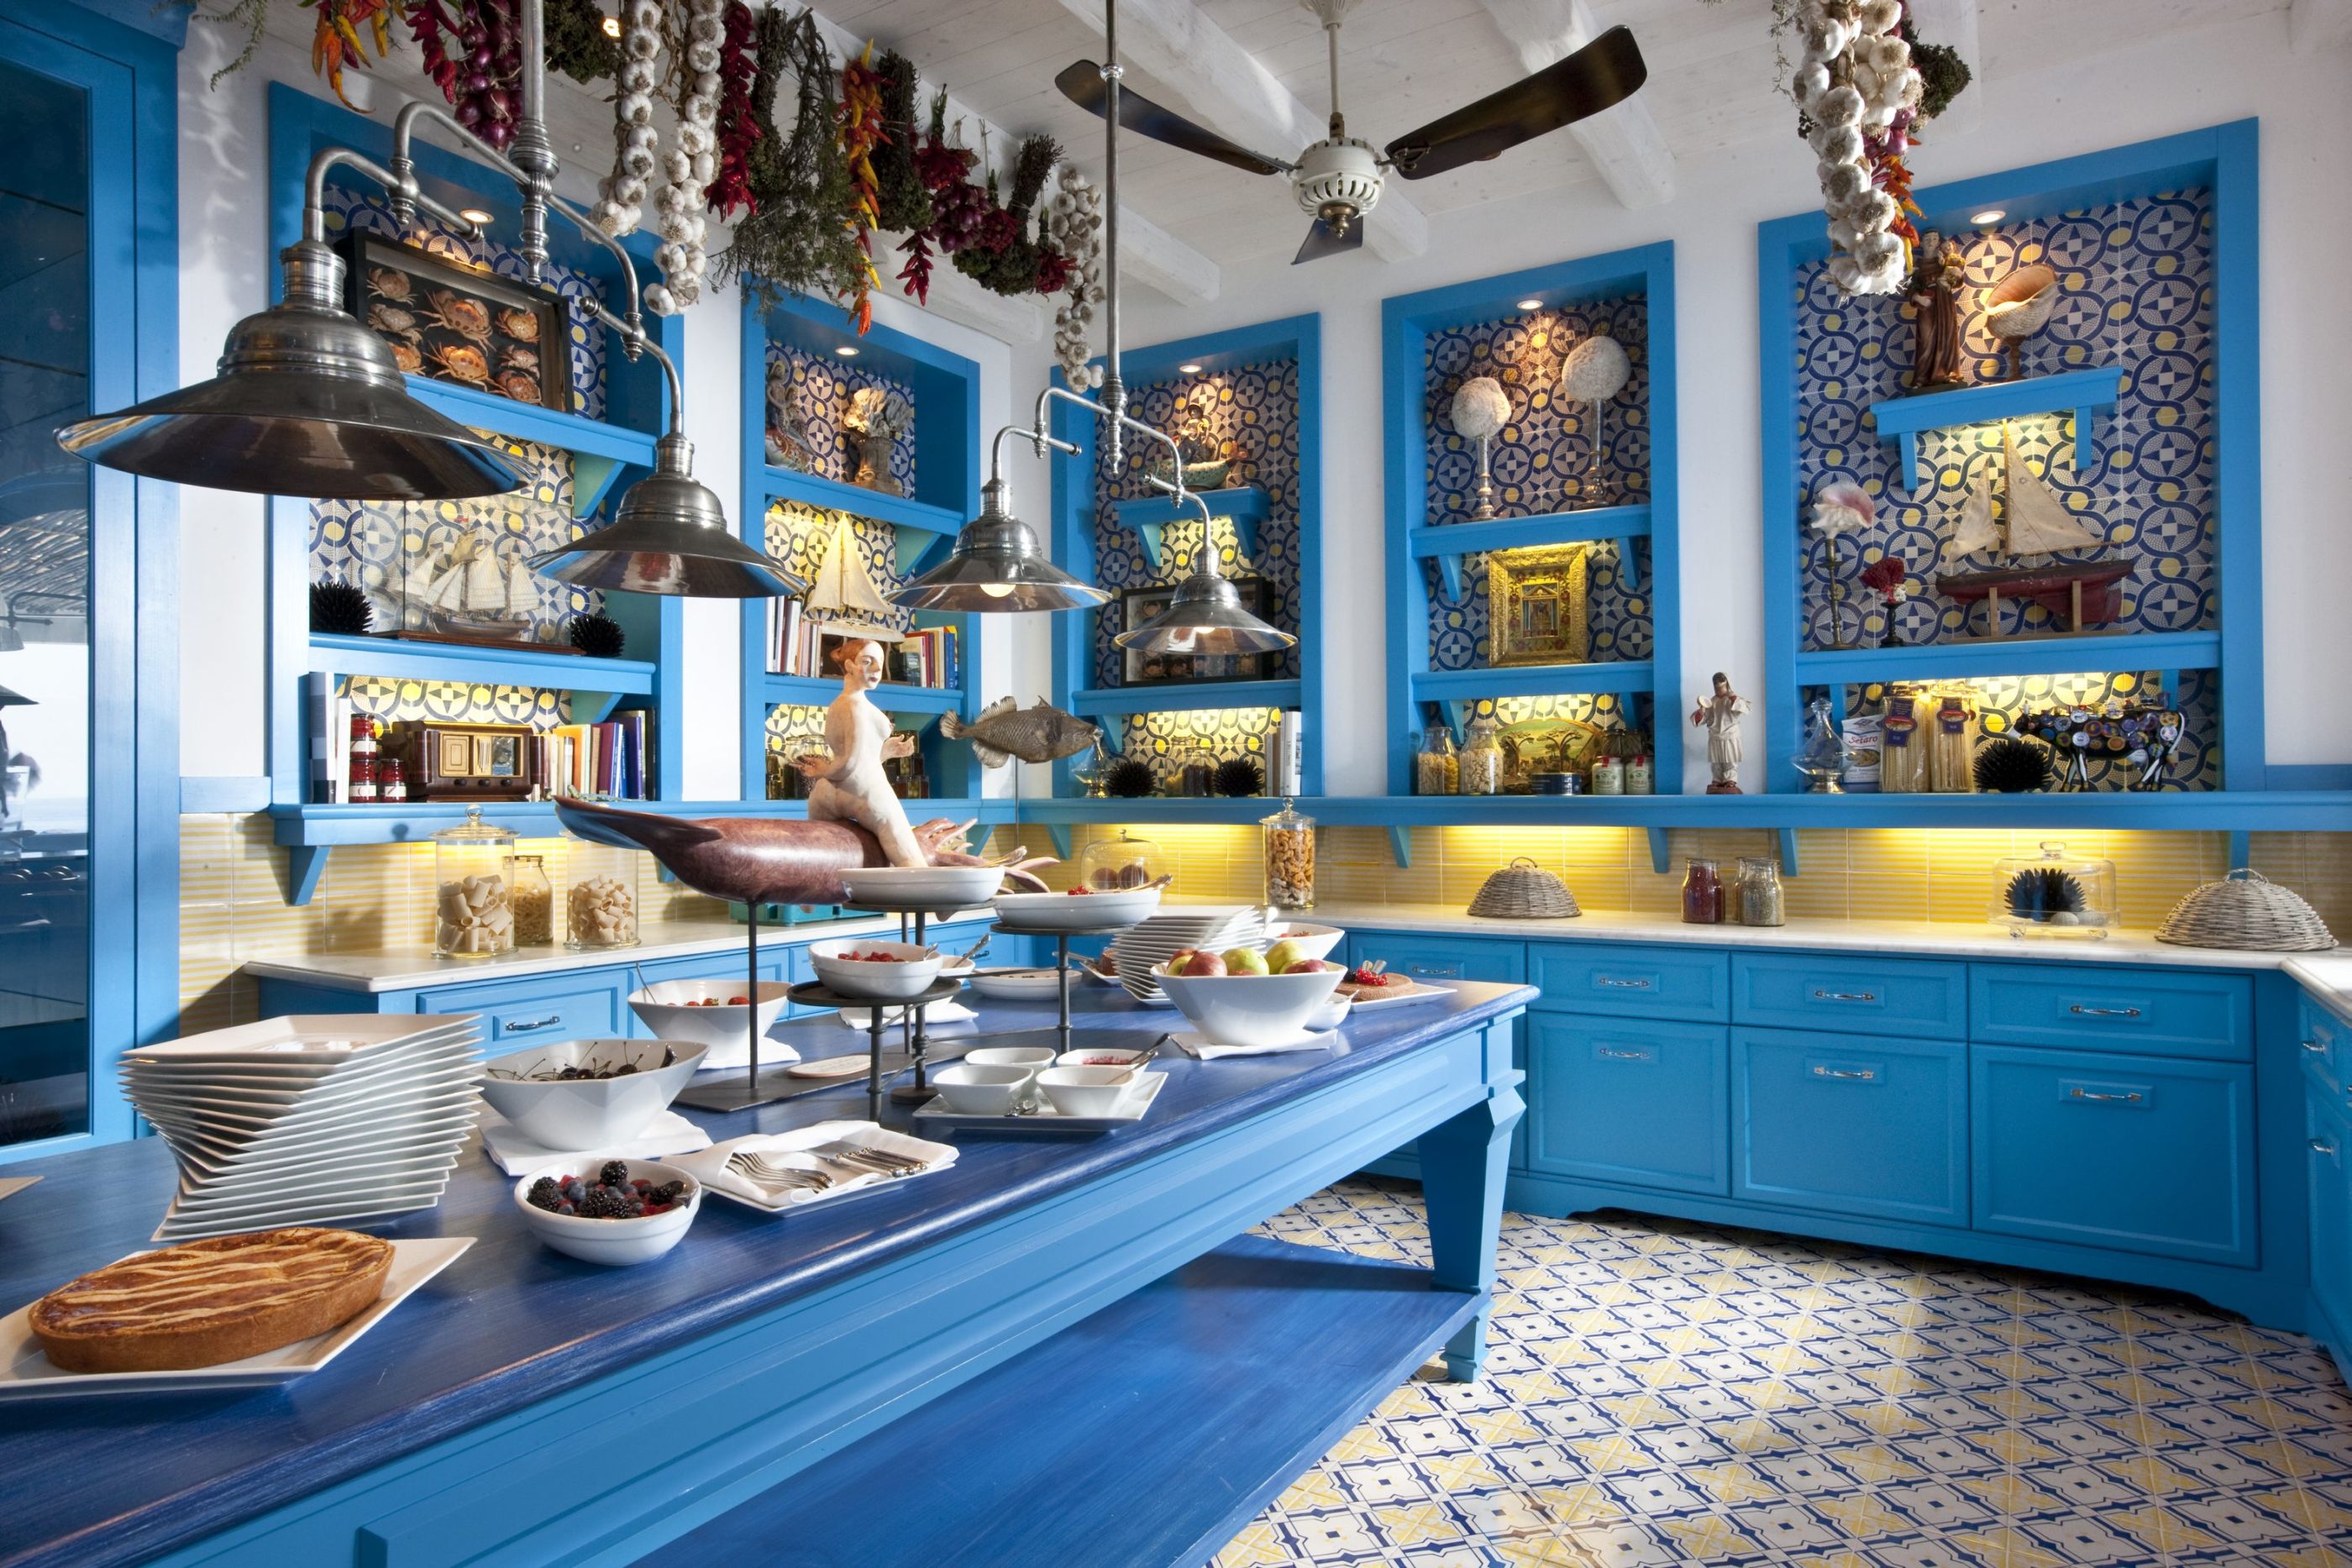 Riccio kitchen of Capri Palace Hotel & Spa, Italy